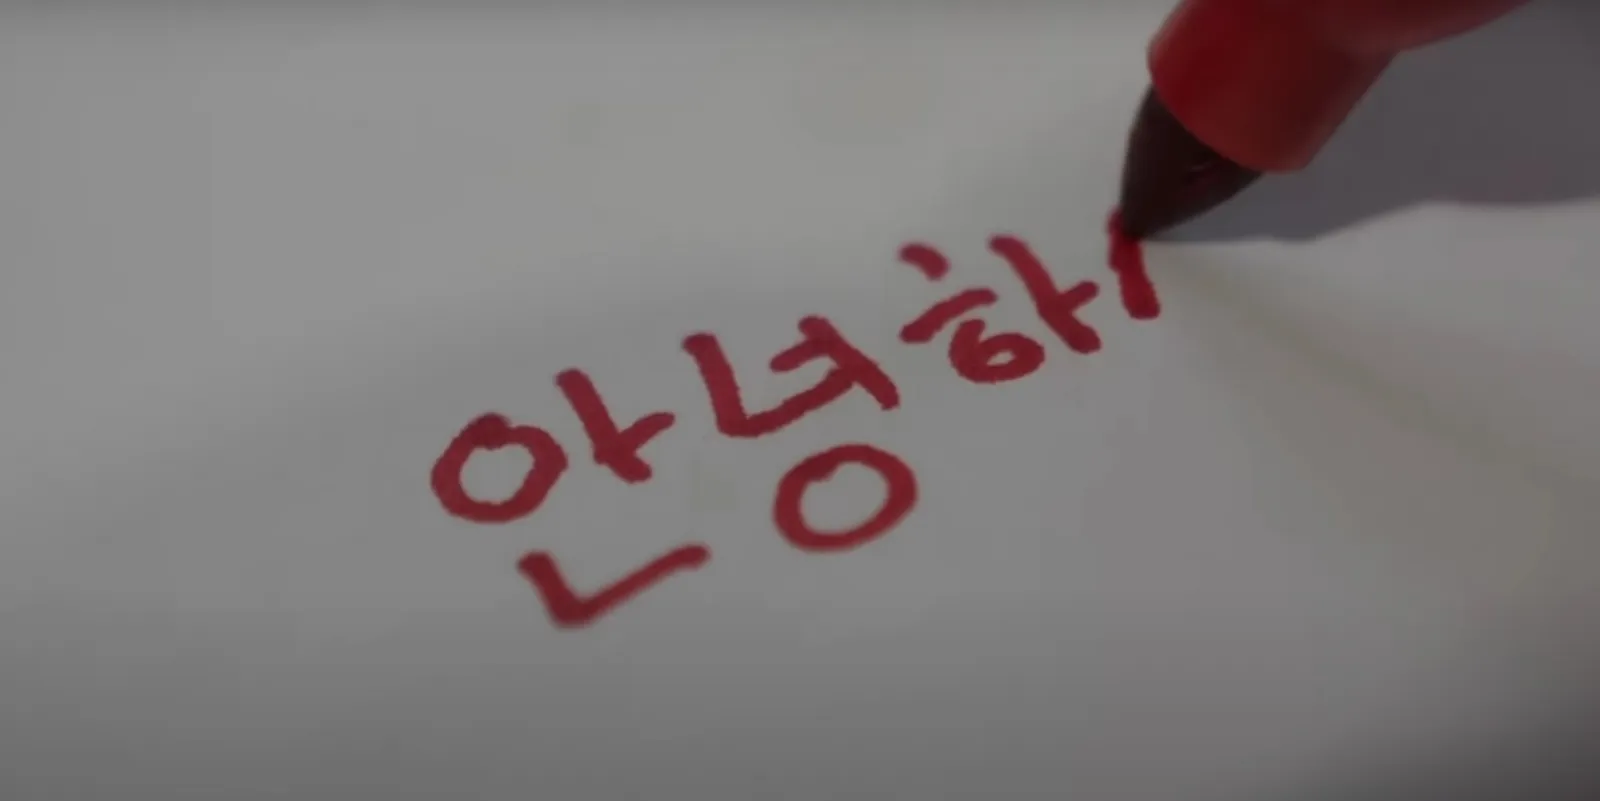 Южная Корея — боязнь красных чернил. В Южной Корее красный цвет — это оттенок, который согласно местным верованиями, символизирует амбивалентность между неудачей и удачей. Писать чье-то имя красными чернилами — значит навлекать на человека неудачу. 